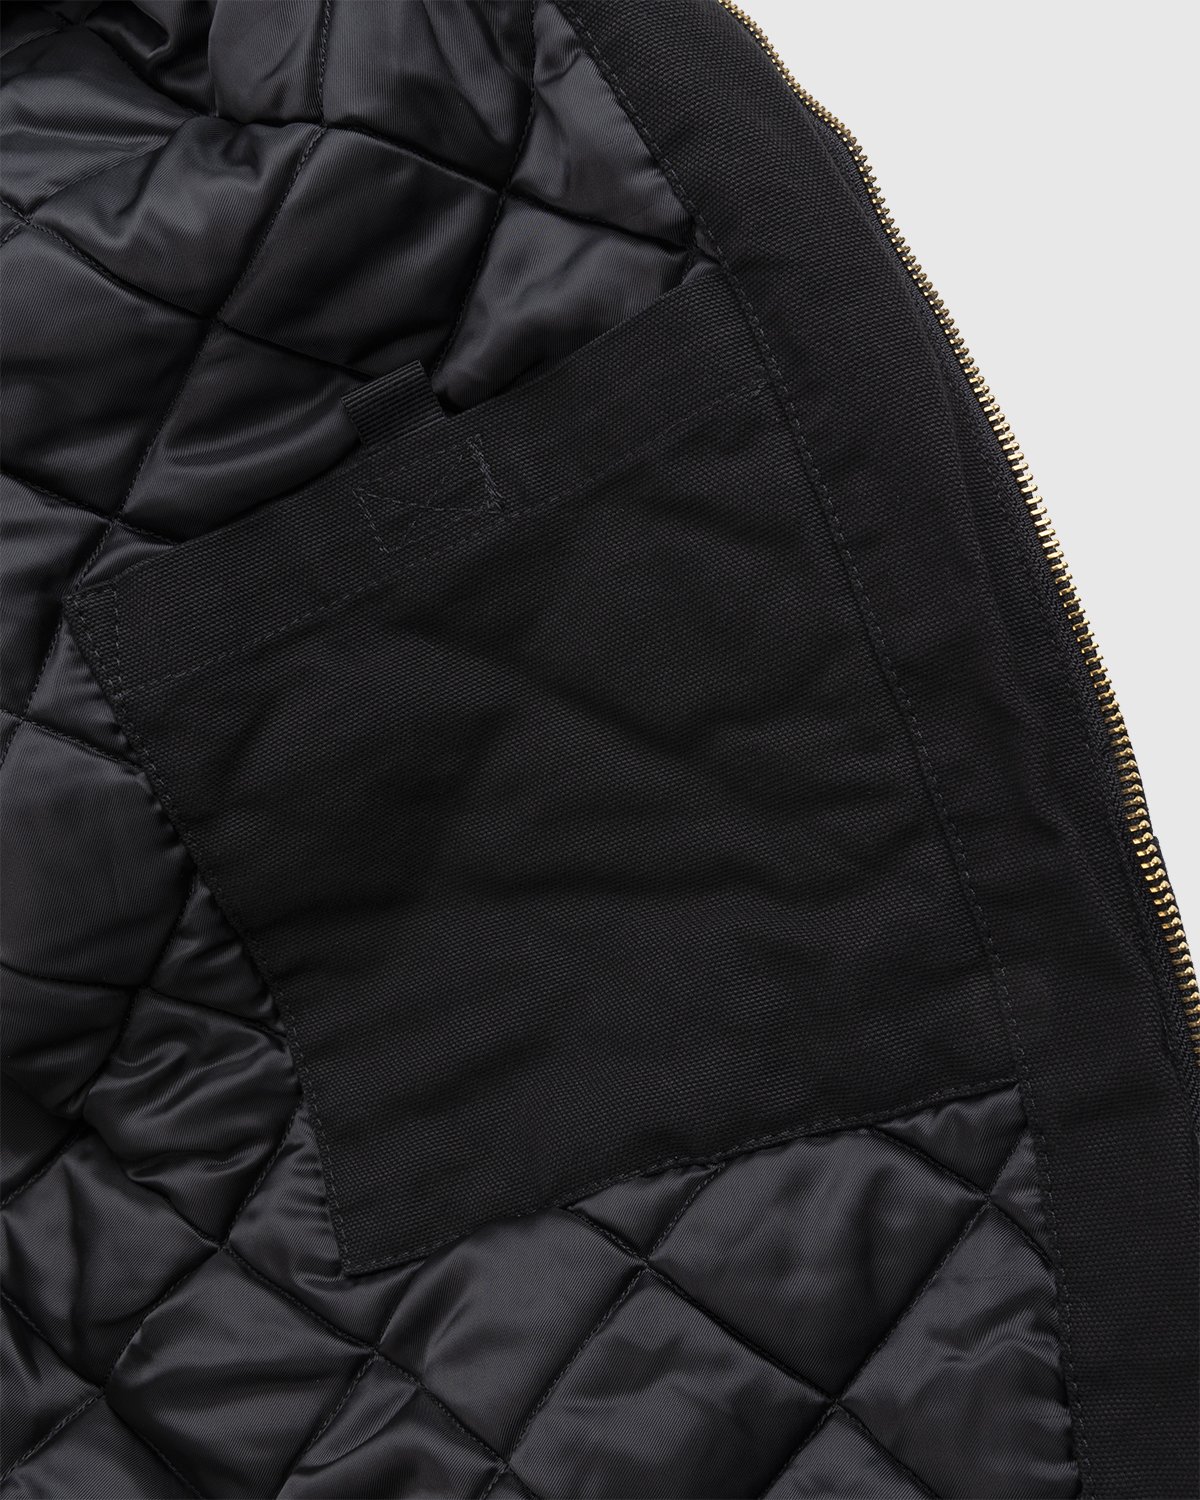 Carhartt WIP - OG Active Jacket Black - Clothing - Black - Image 6